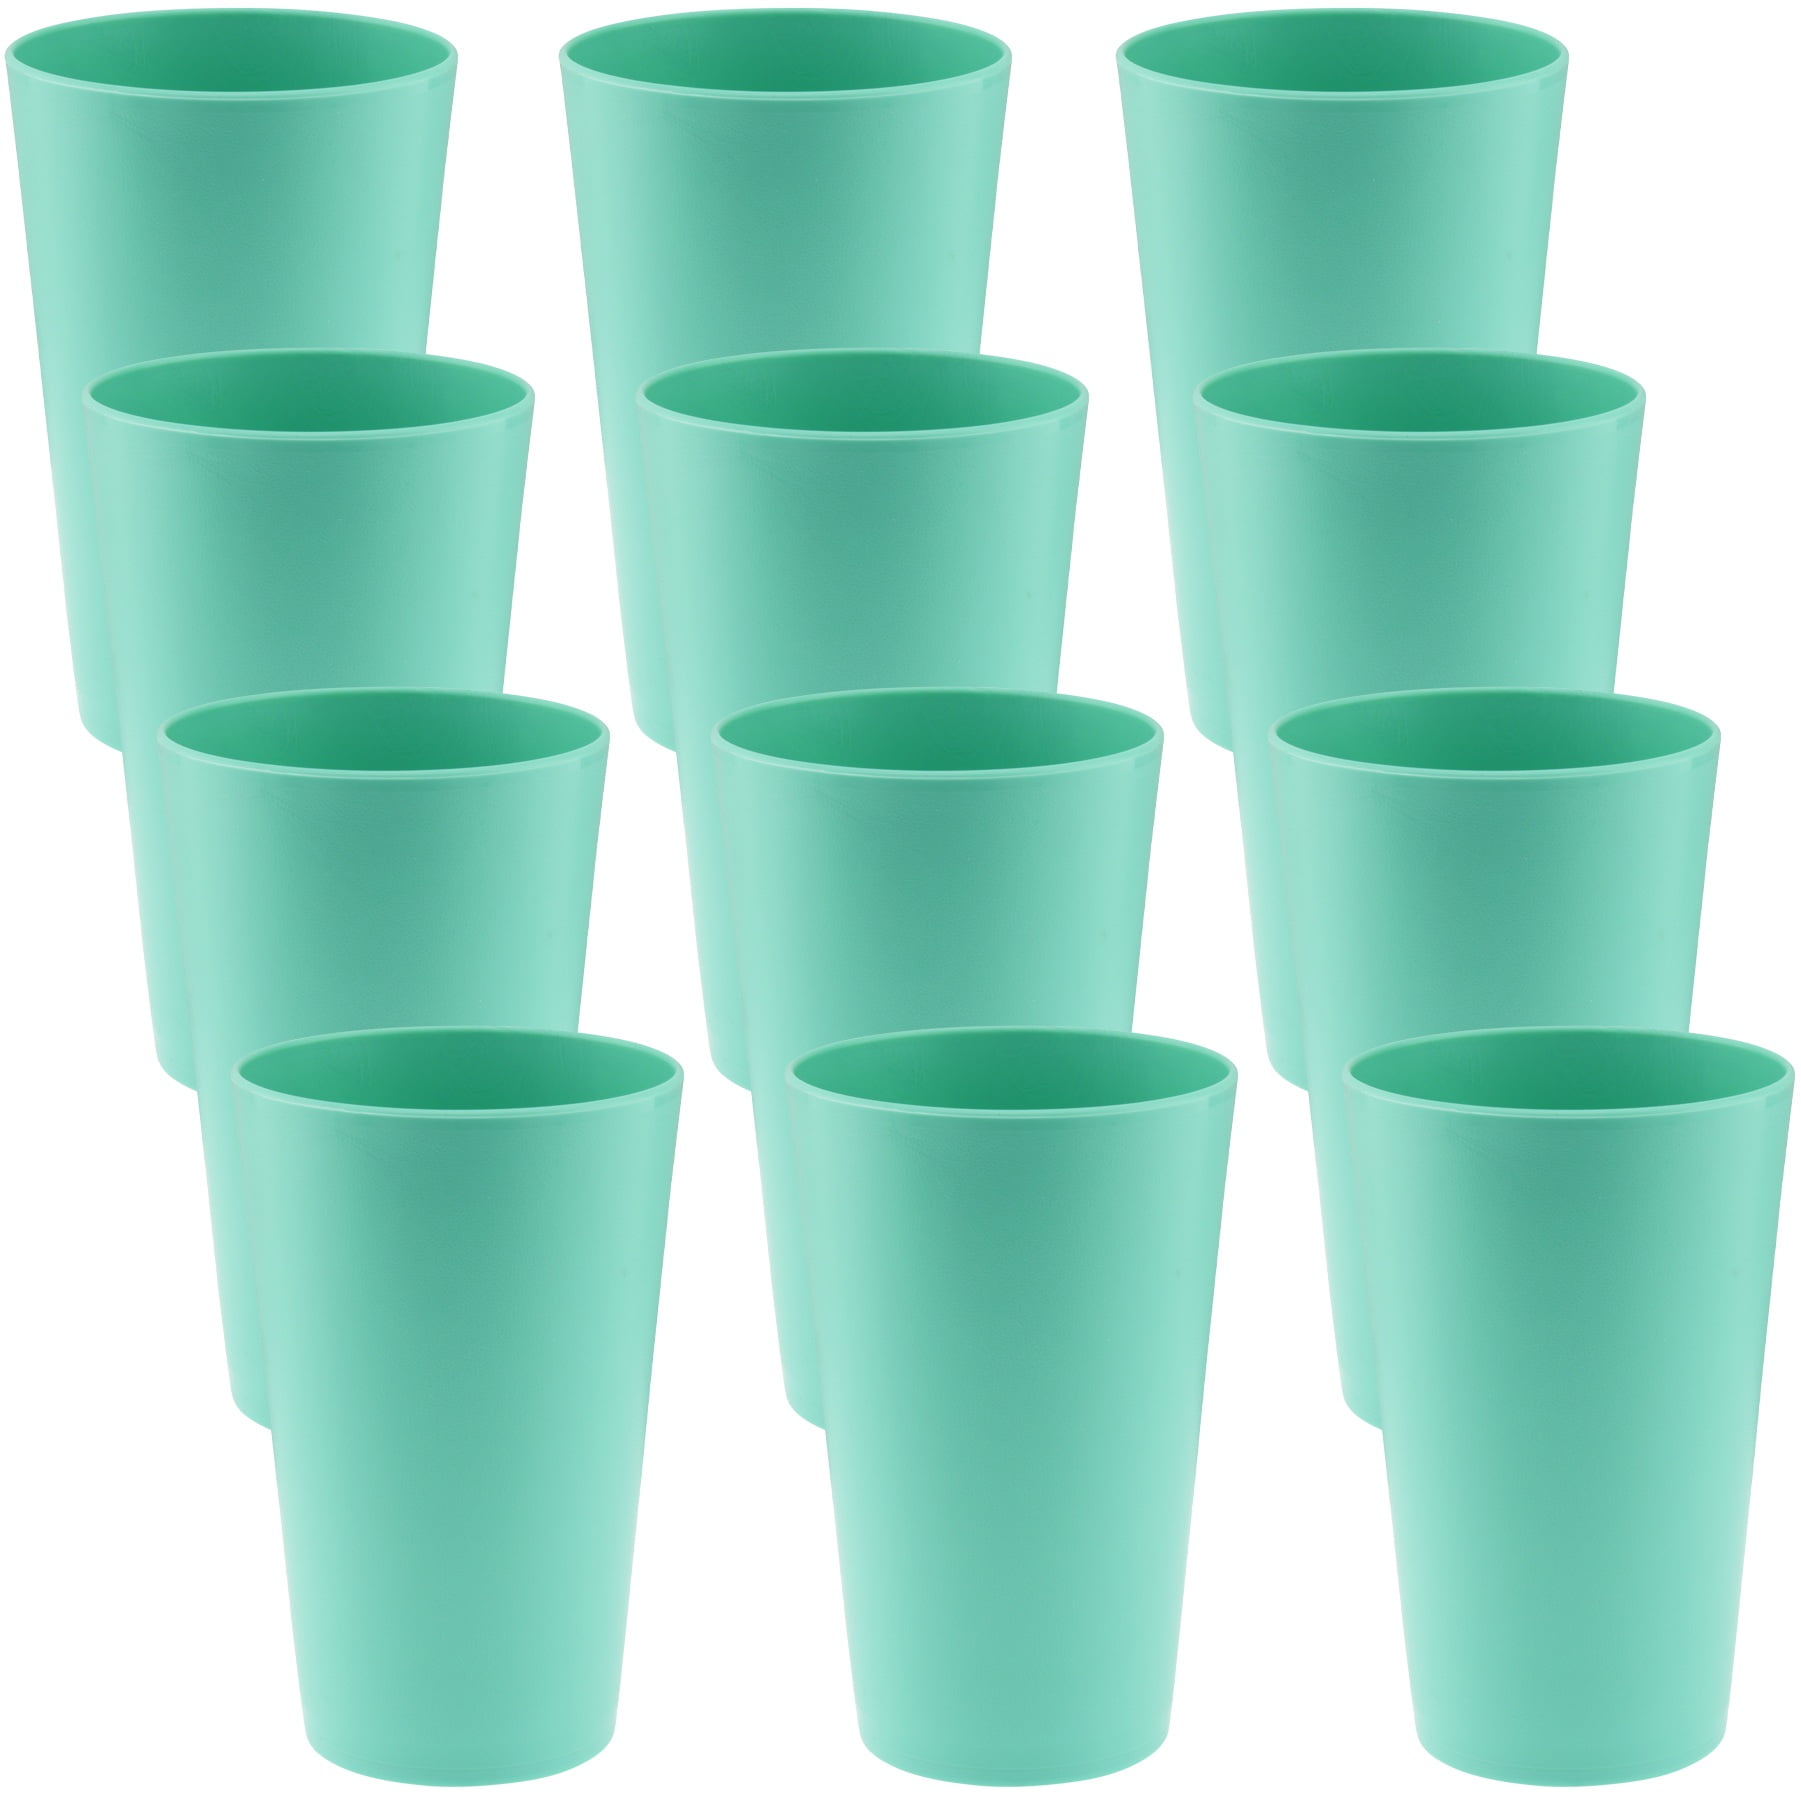 Reusable Plastic Cups (set of 4) - Blue